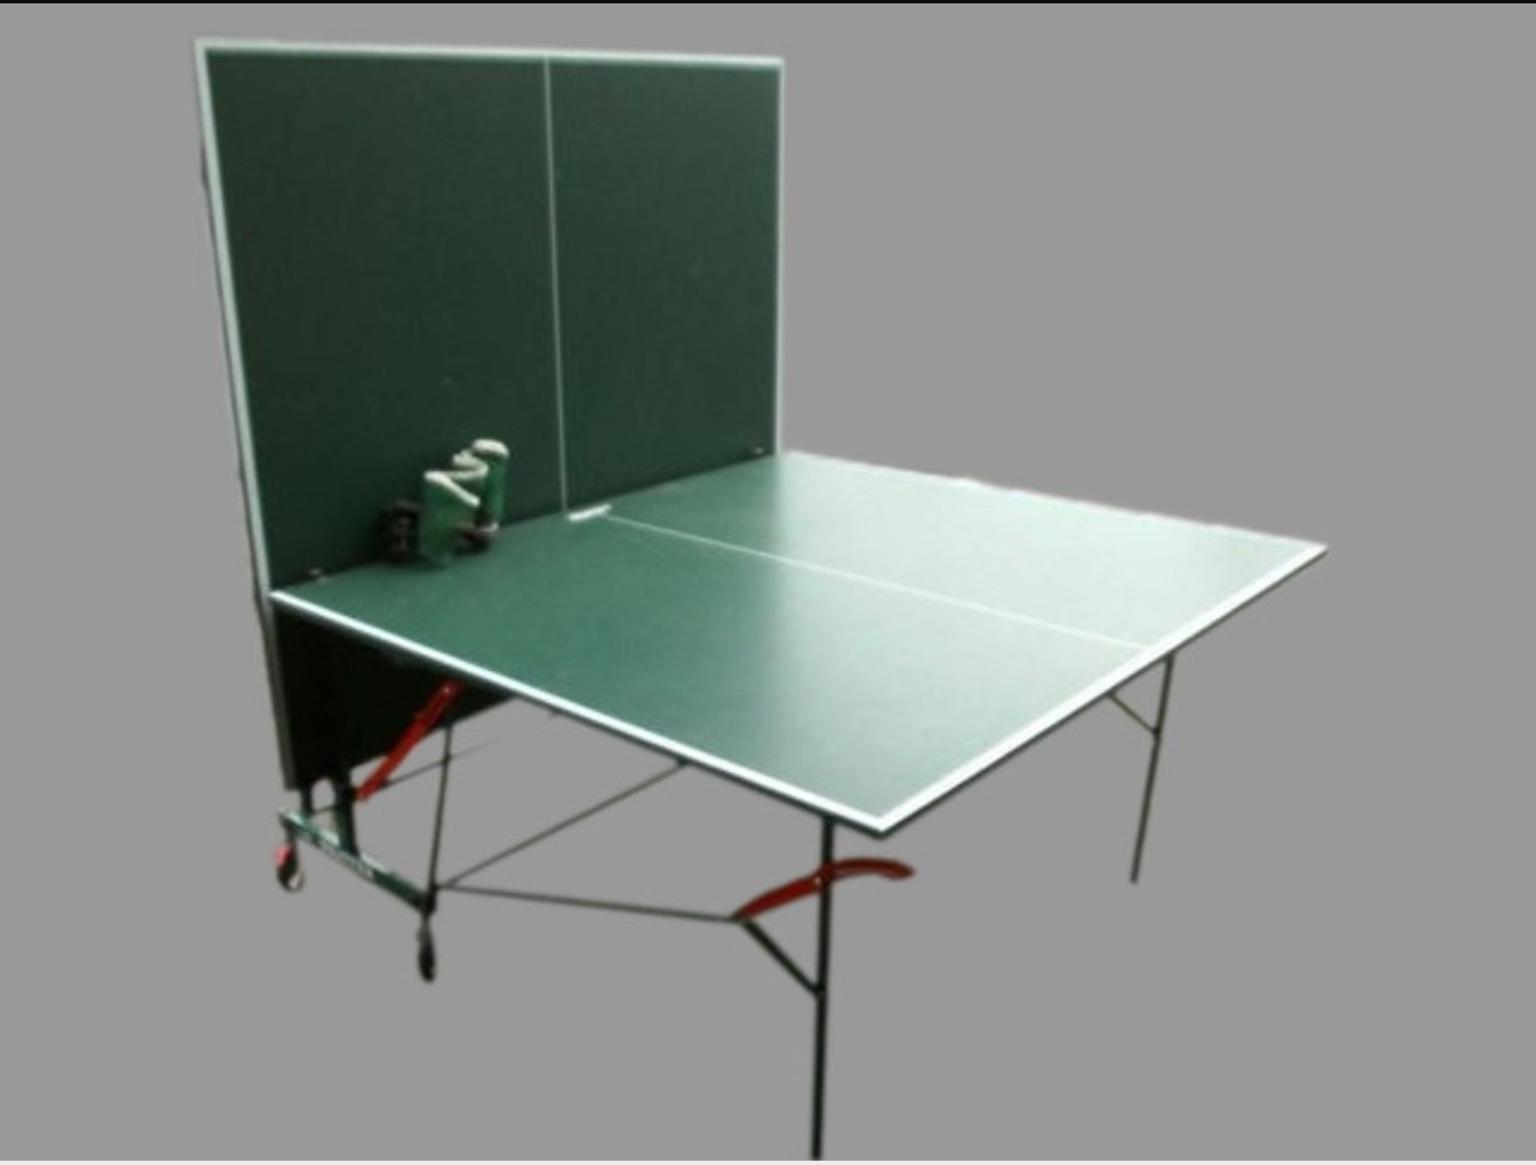 теннисный стол compact outdoor 2 lx